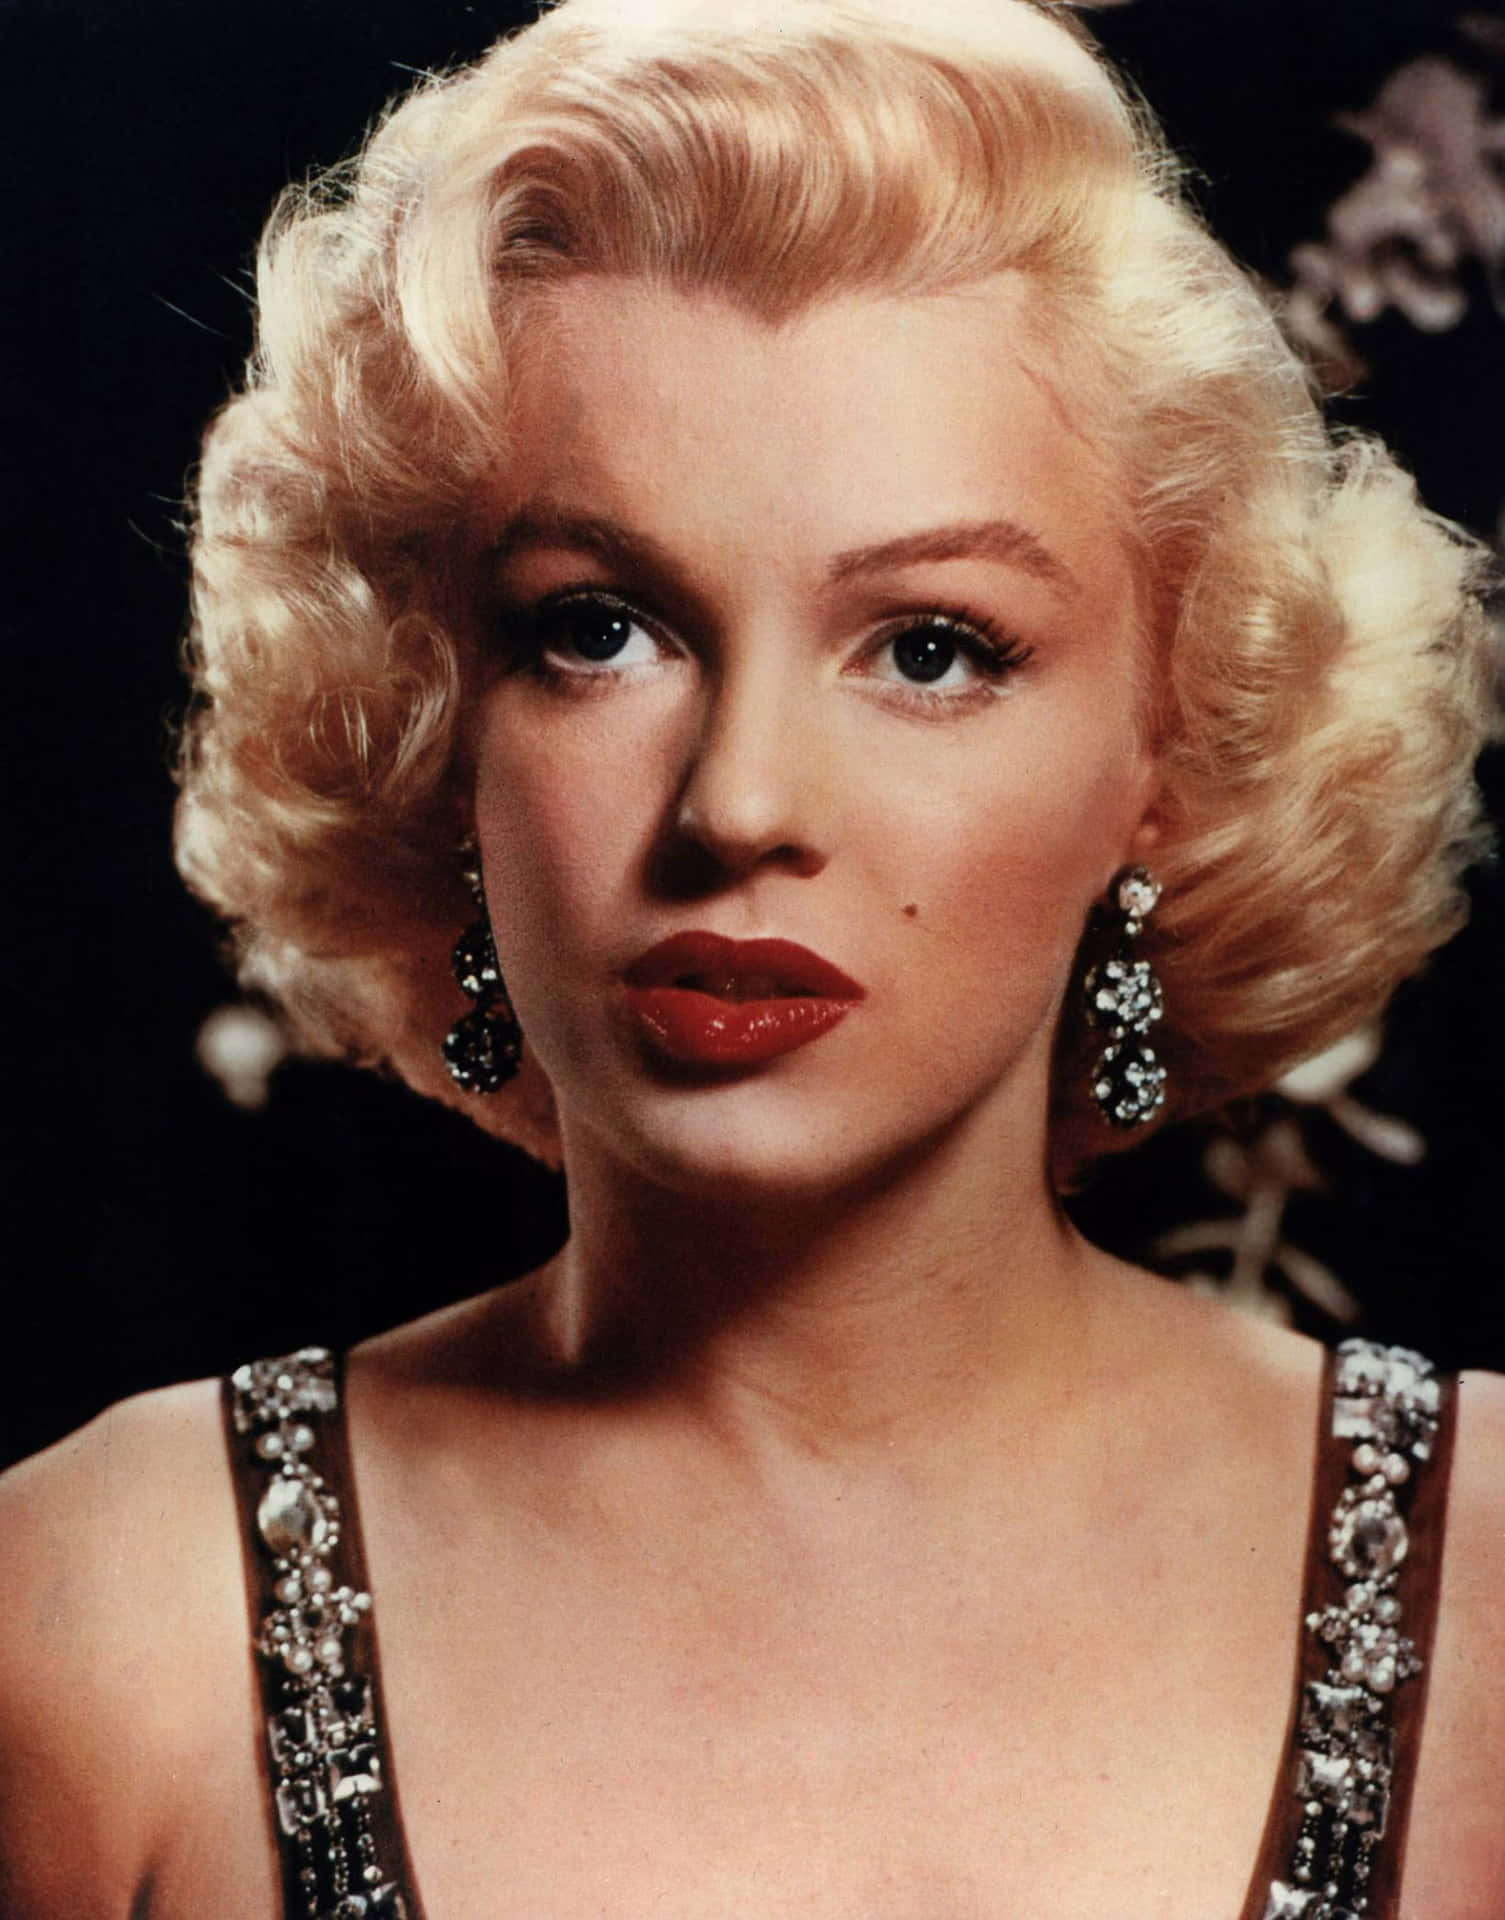 Classic Beauty - Marilyn Monroe